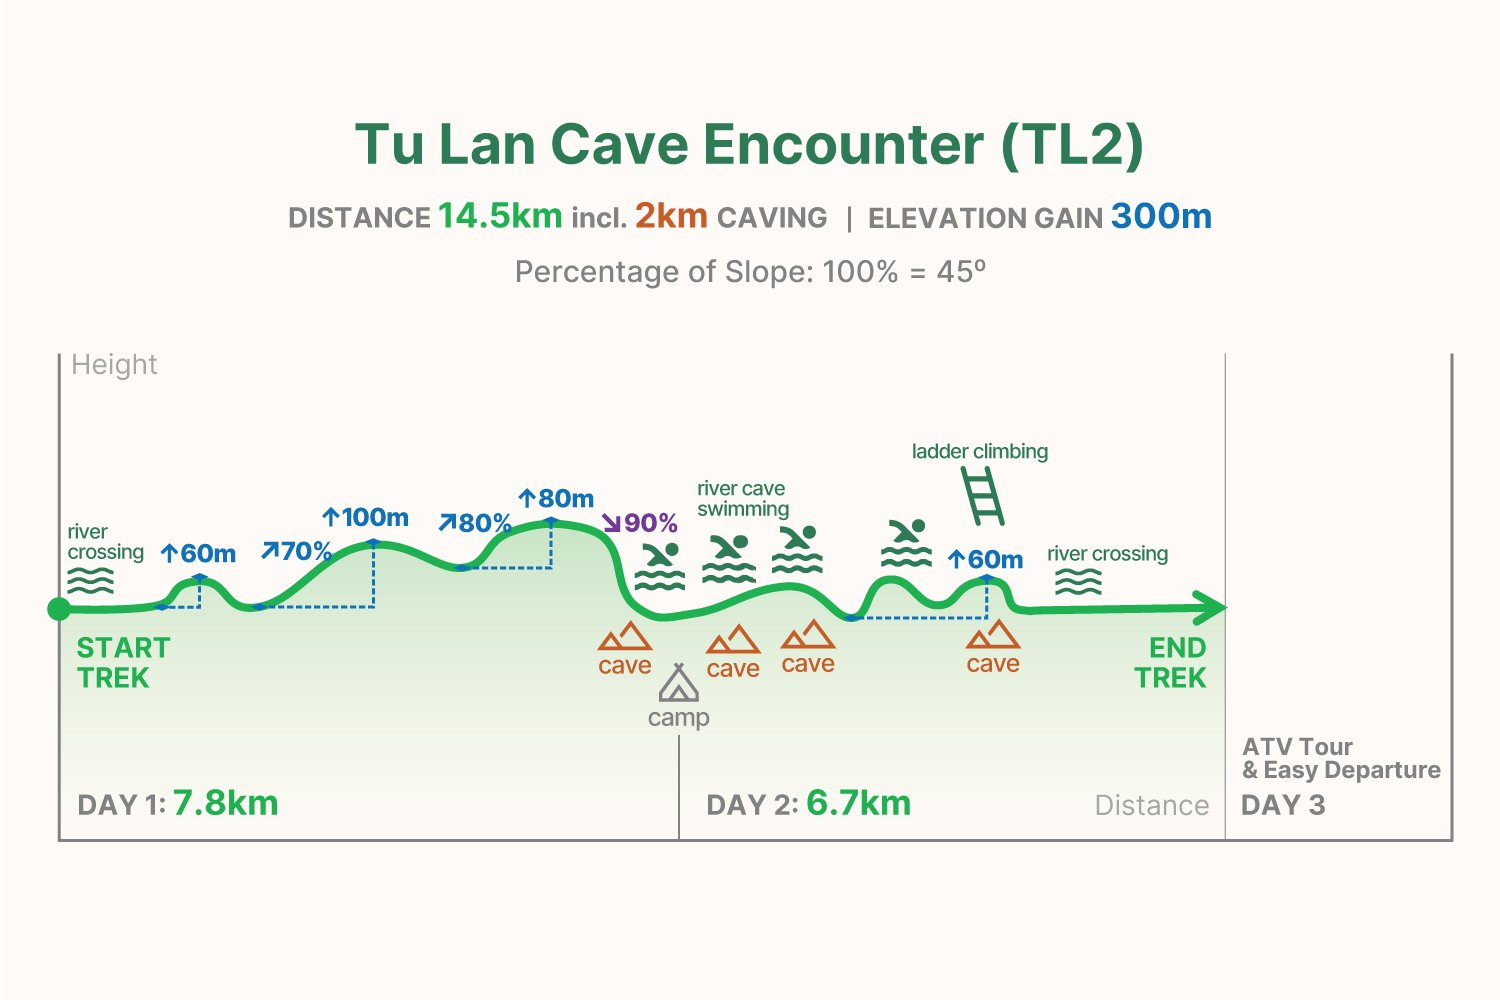 TL2 trekking graph